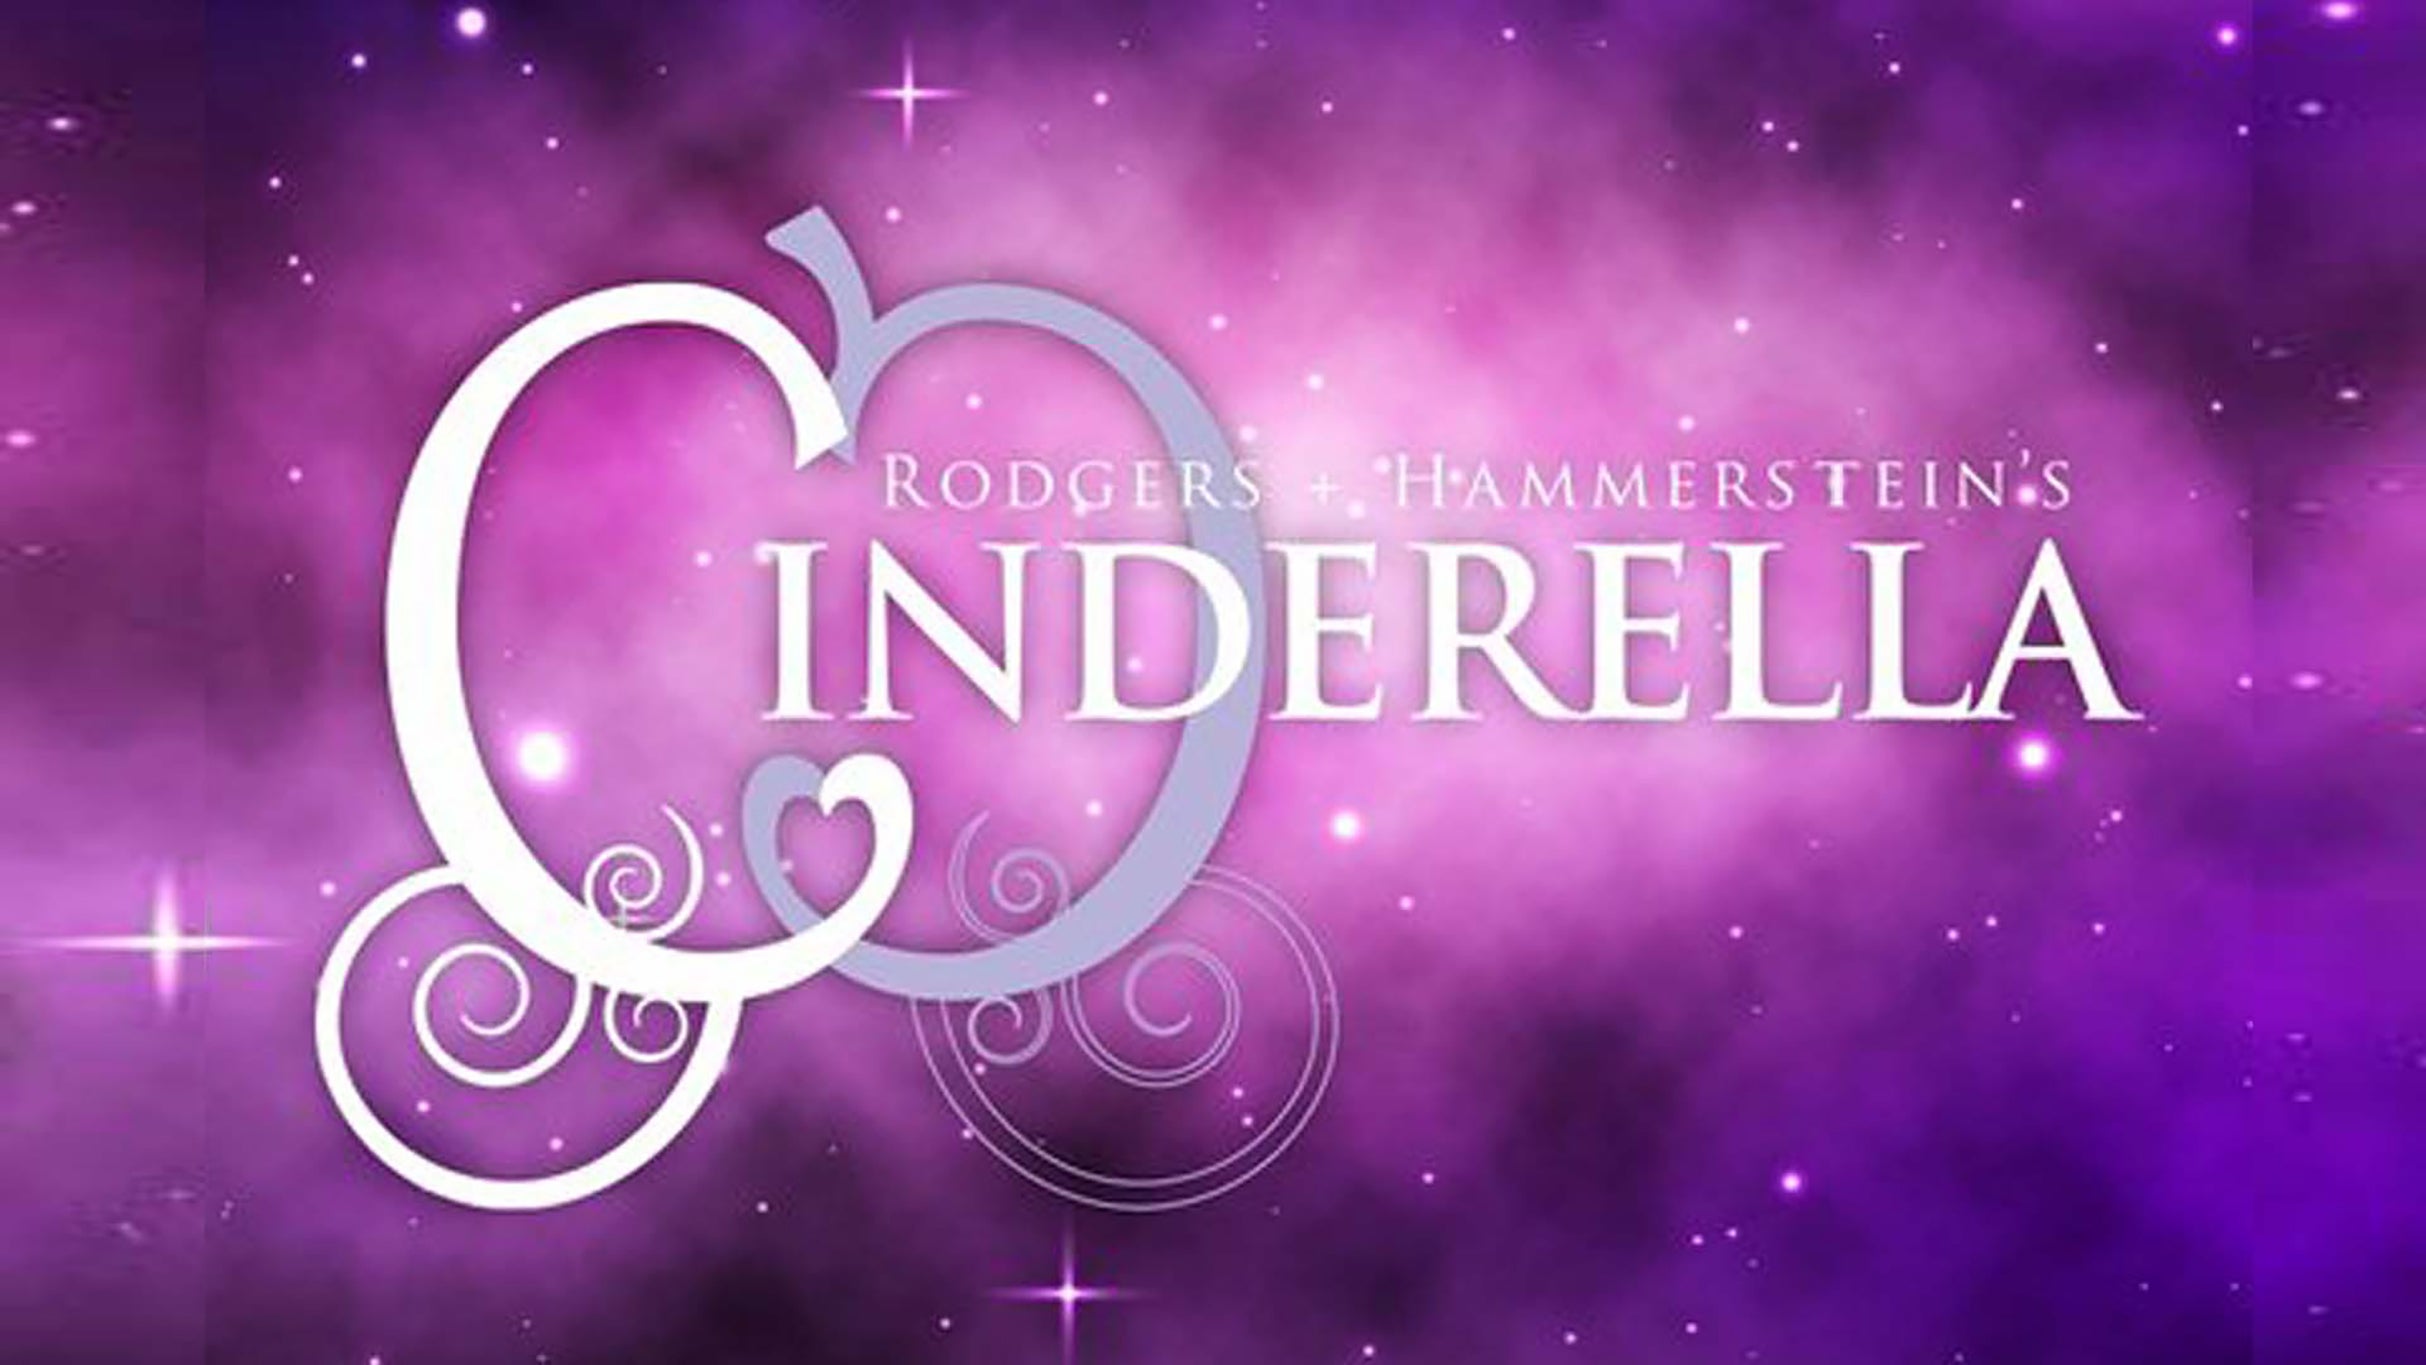 5 Star Theatricals presents Cinderella